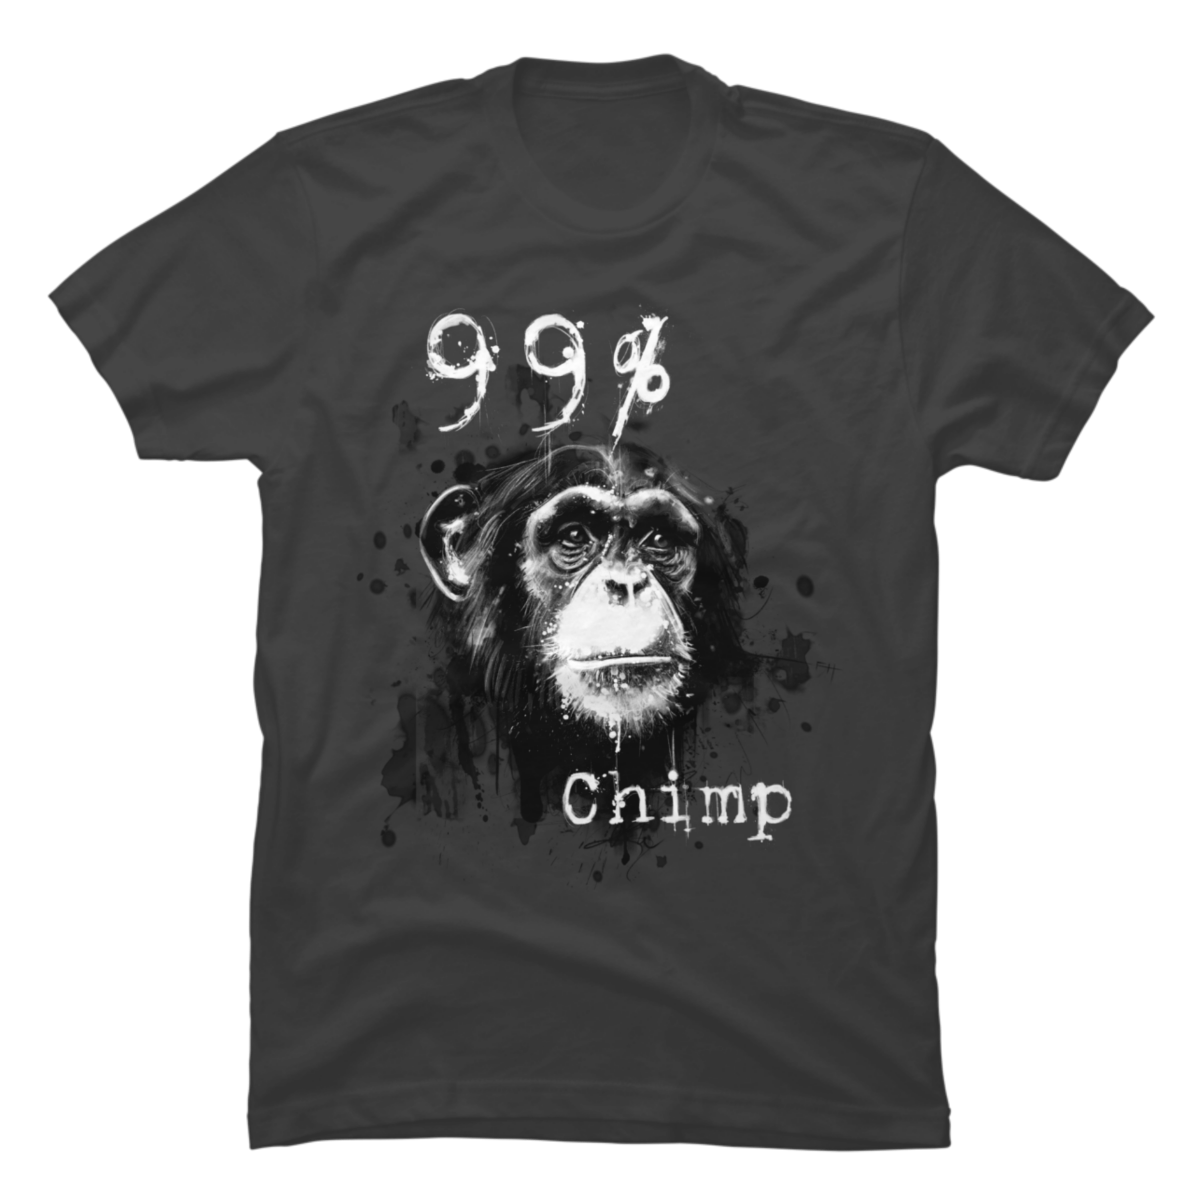 chimp shirt